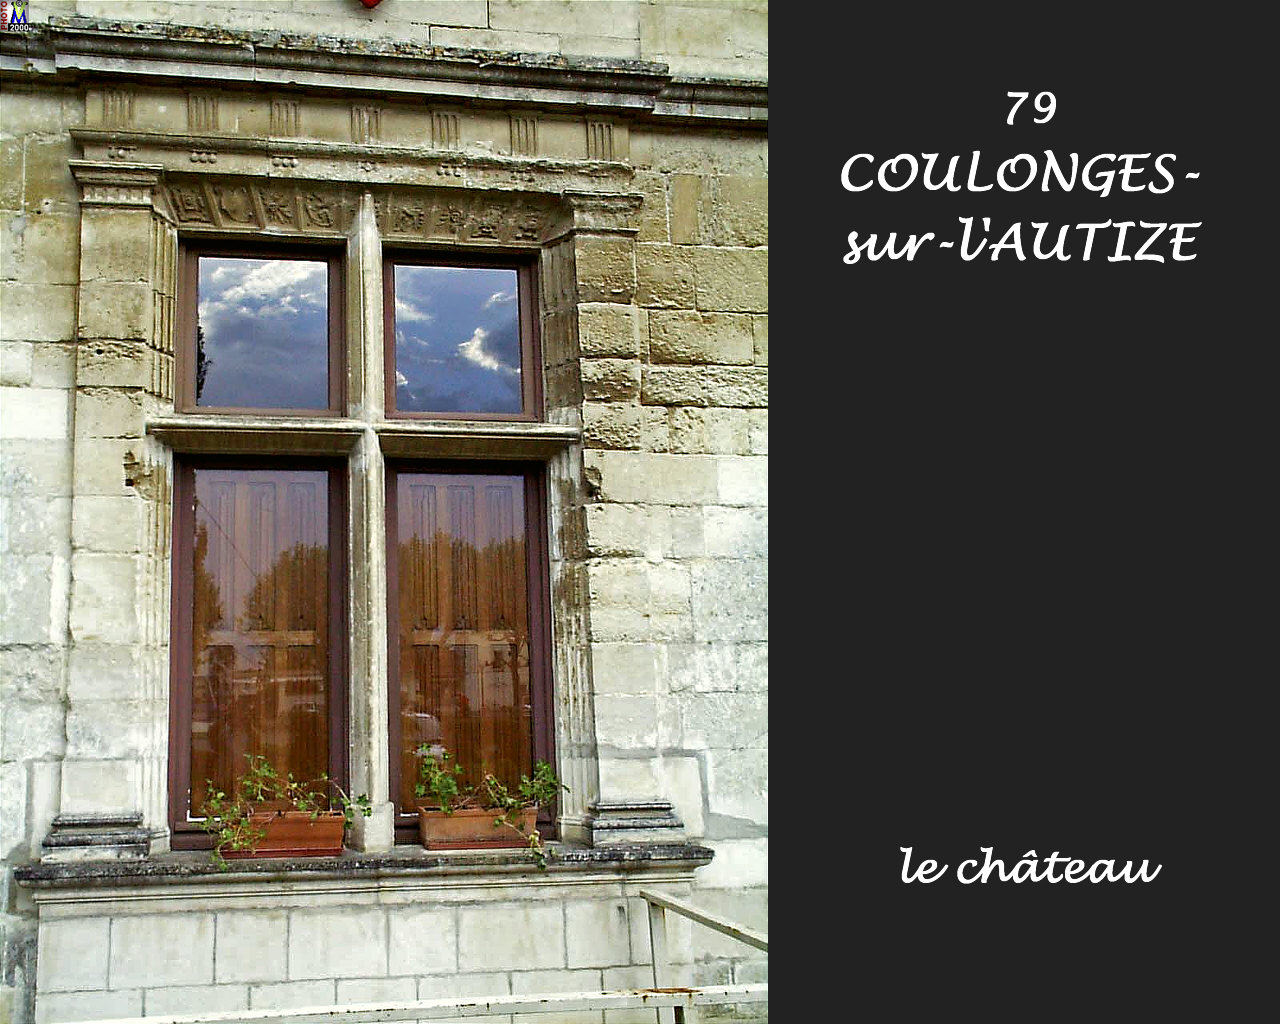 79COULONGES-AUTIZE_chateau_104.jpg